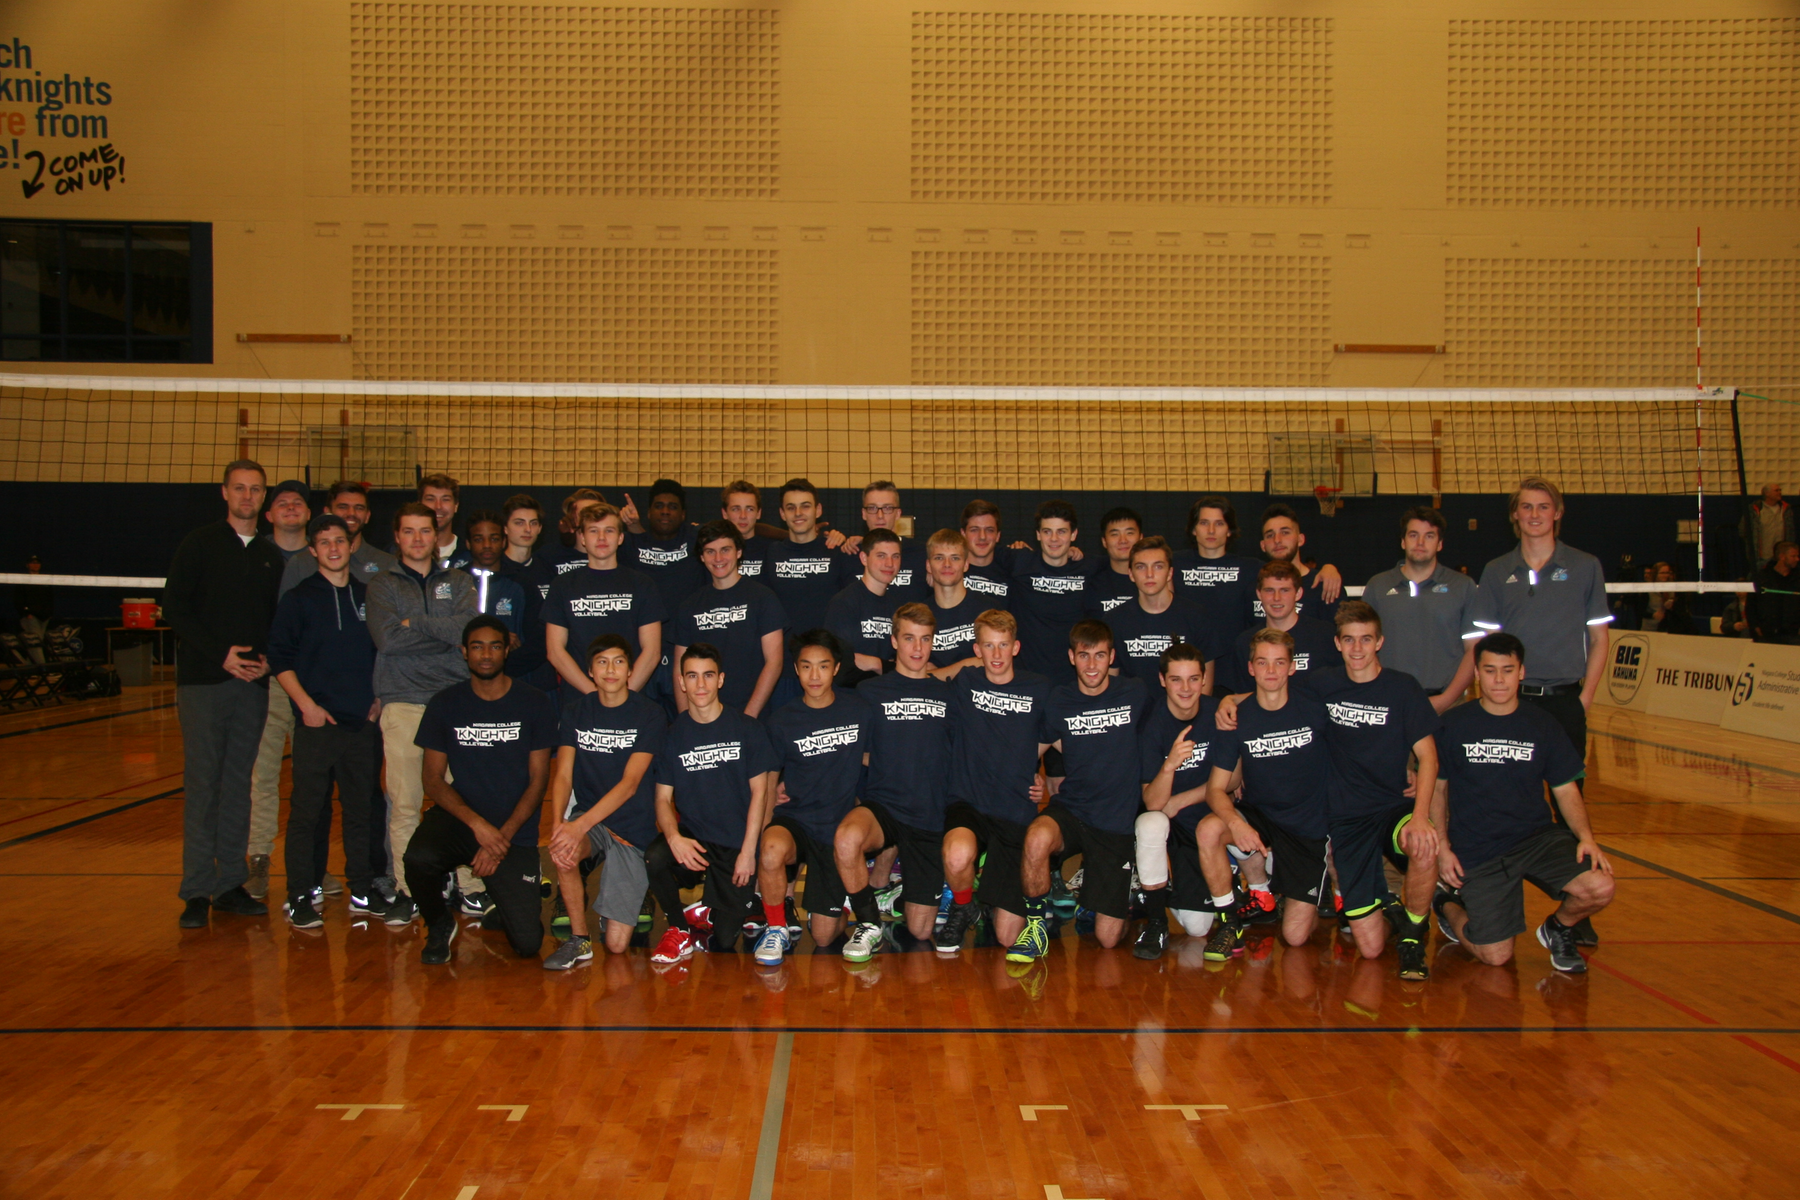 Team Blue wins 3rd Annual Niagara Region Boys’ Volleyball Showcase